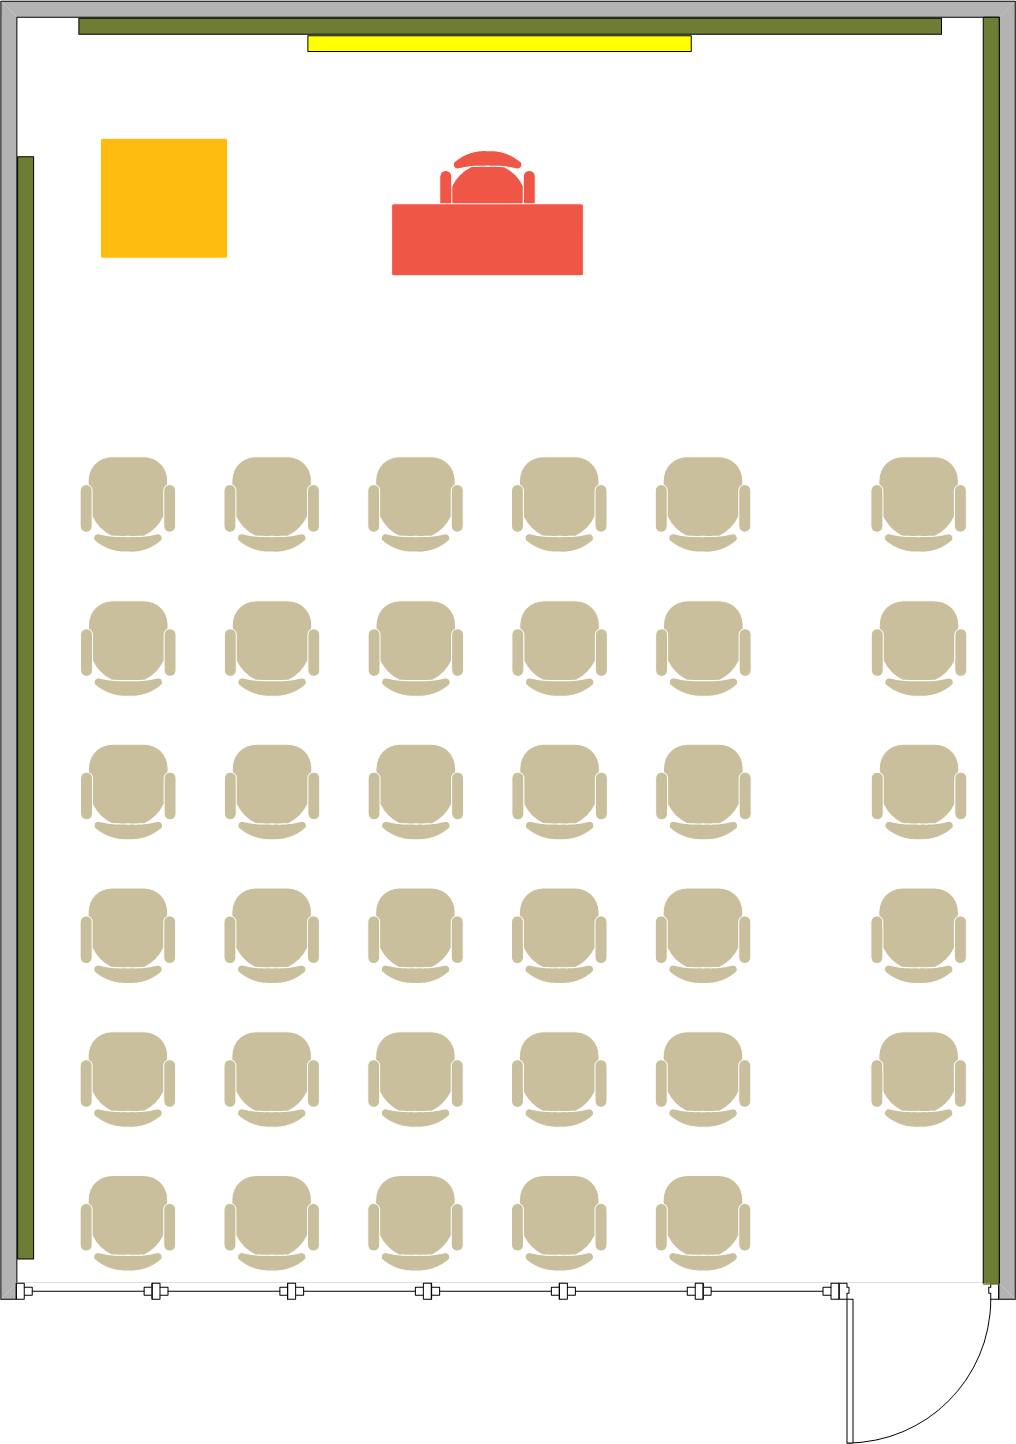 Phelps Hall - 1448 Seating Chart